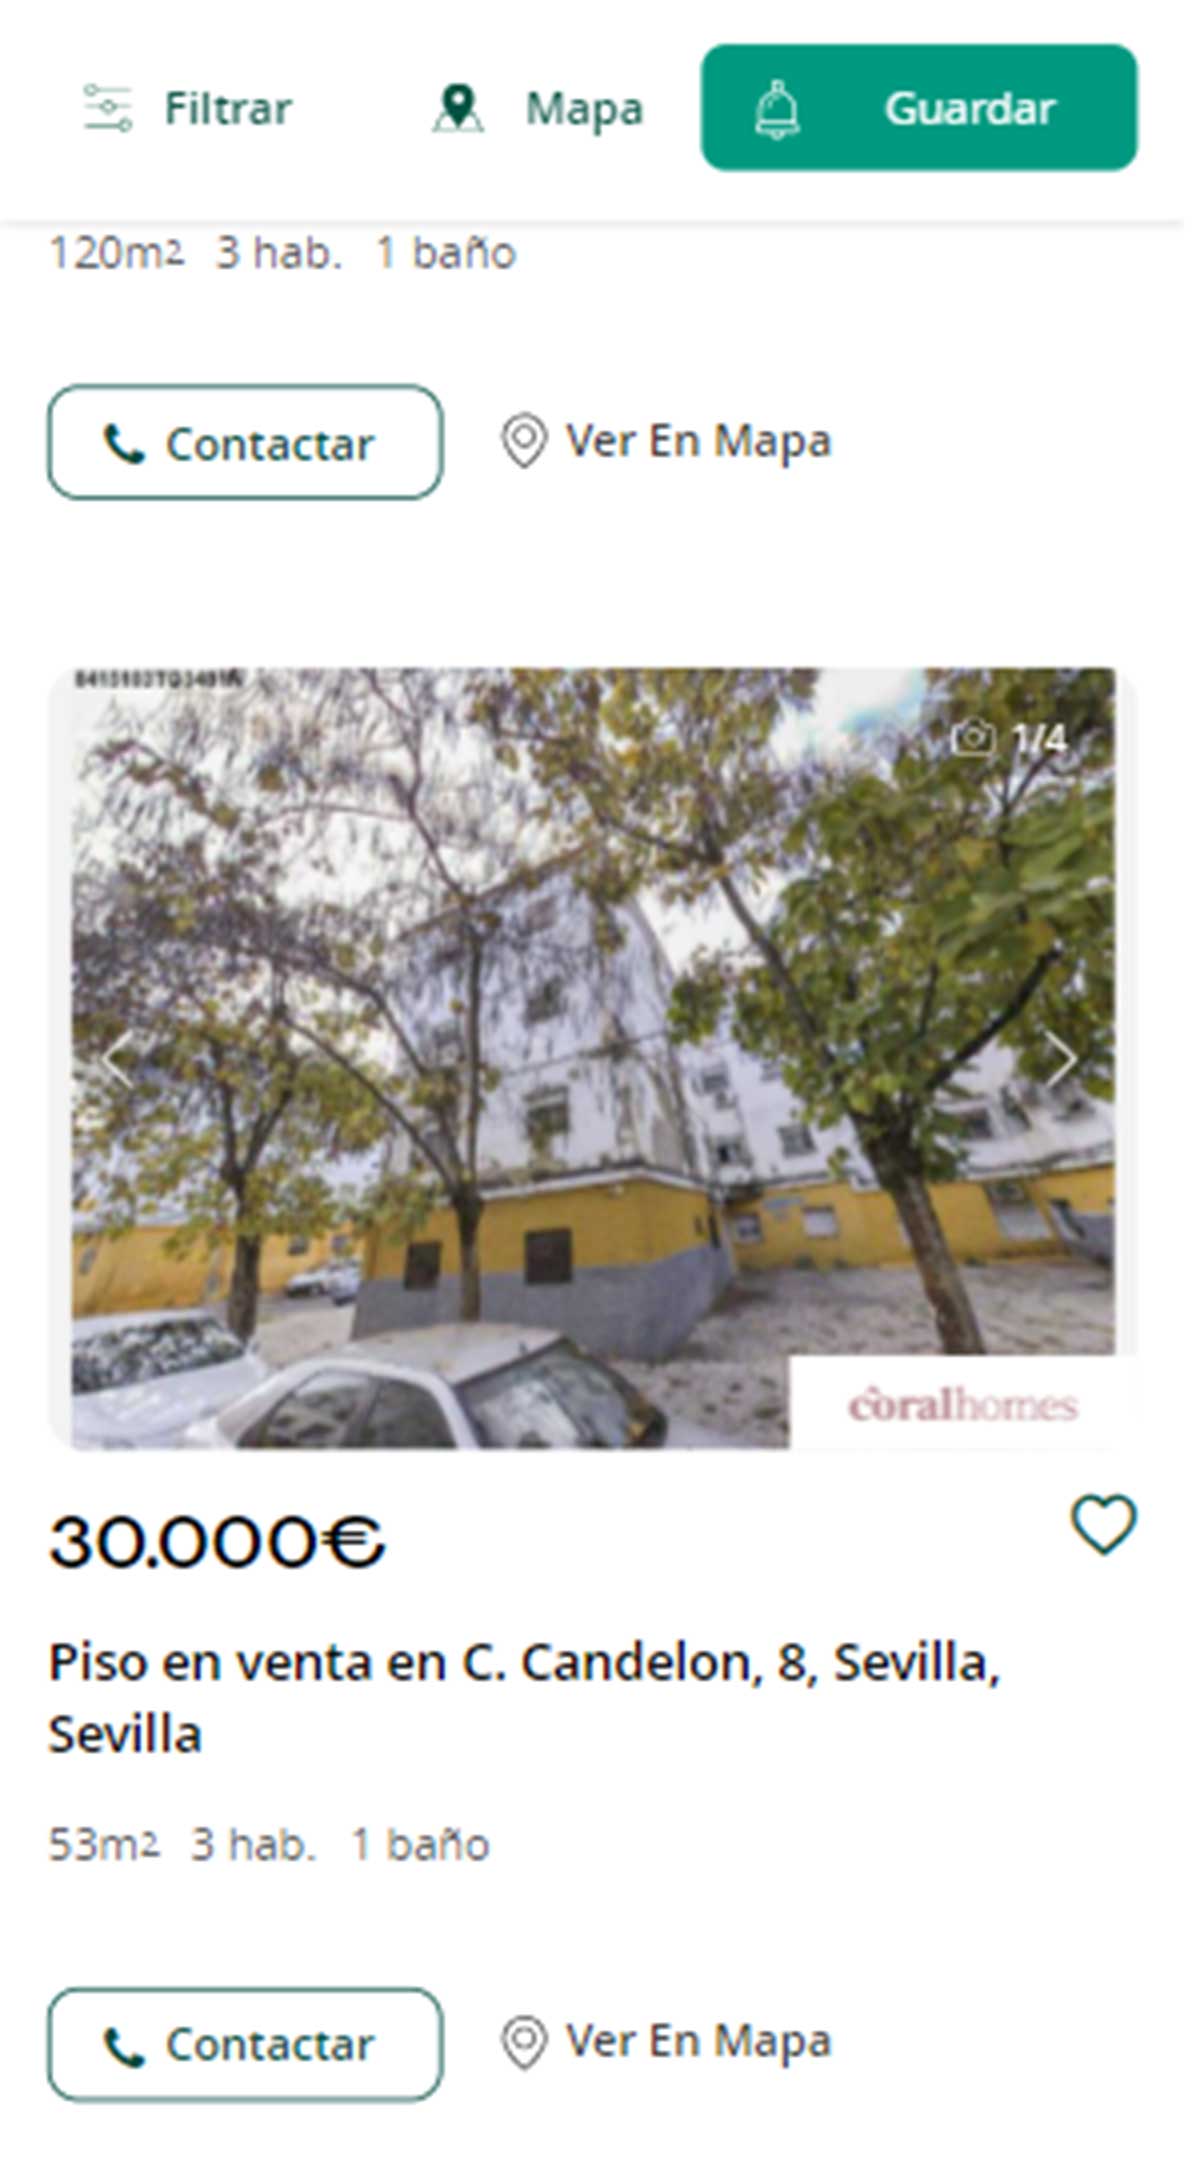 Piso en Sevilla por 30.000 euros